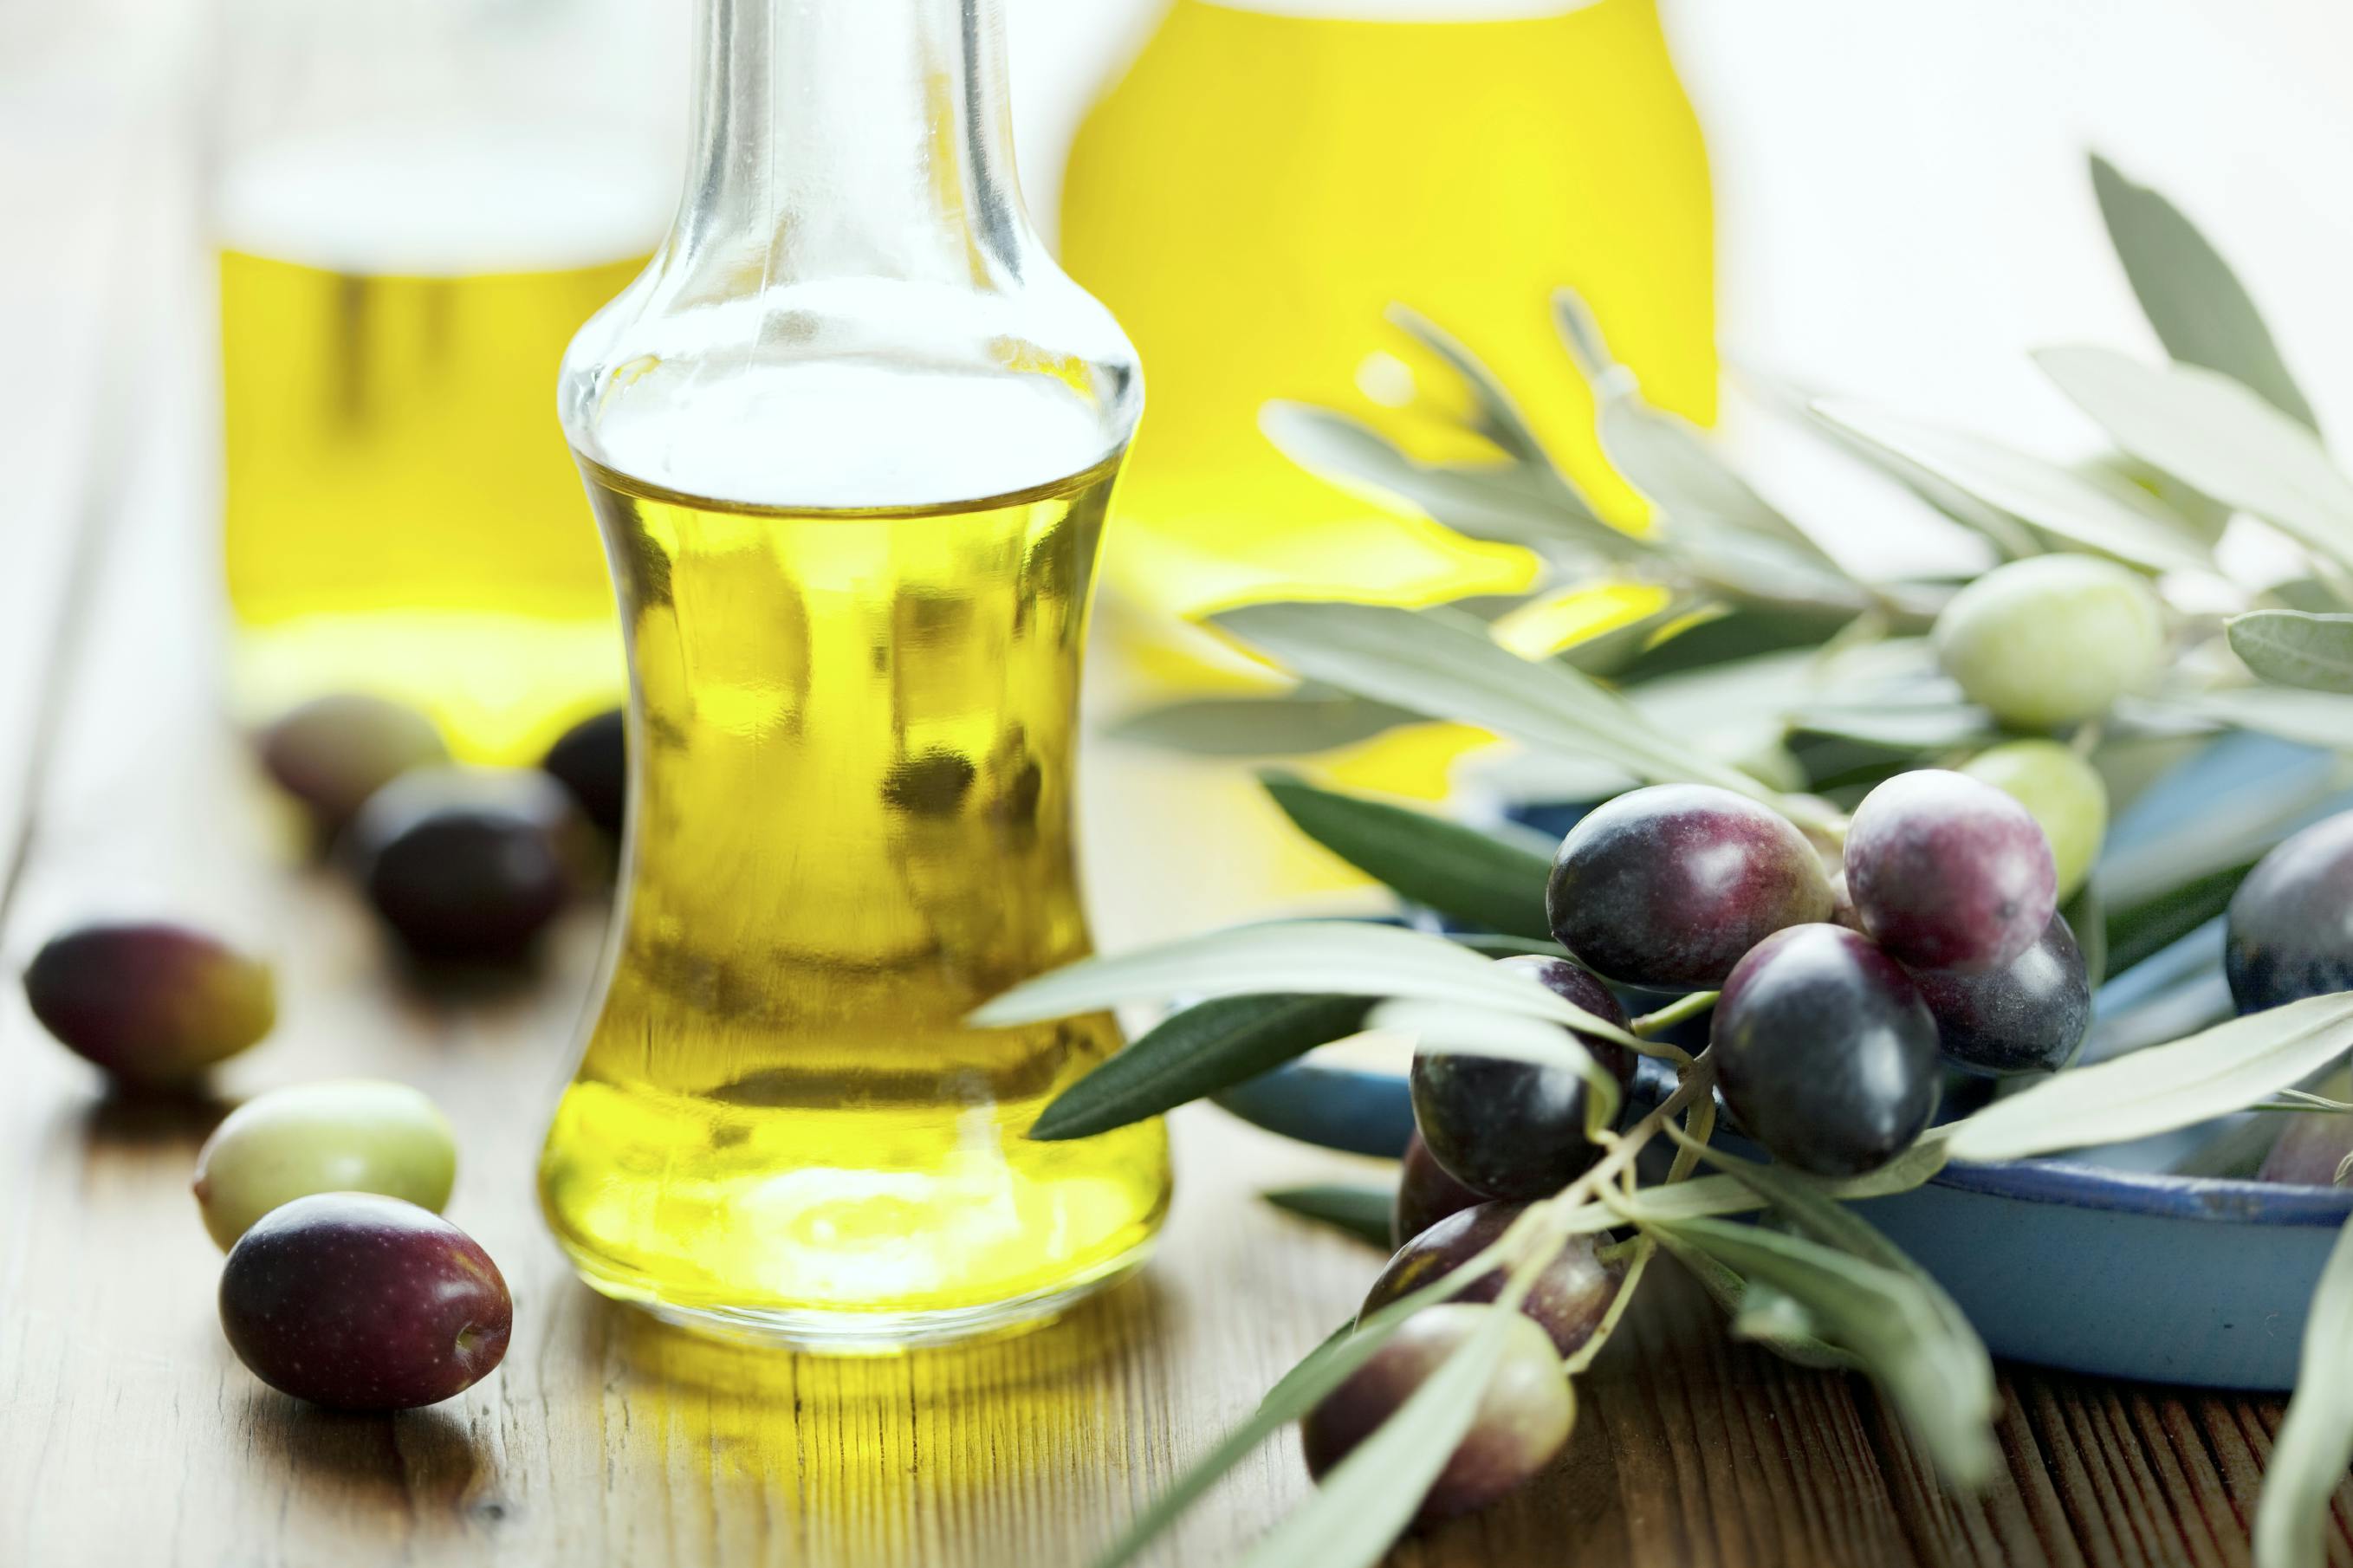 Оливковое масло холодного польза